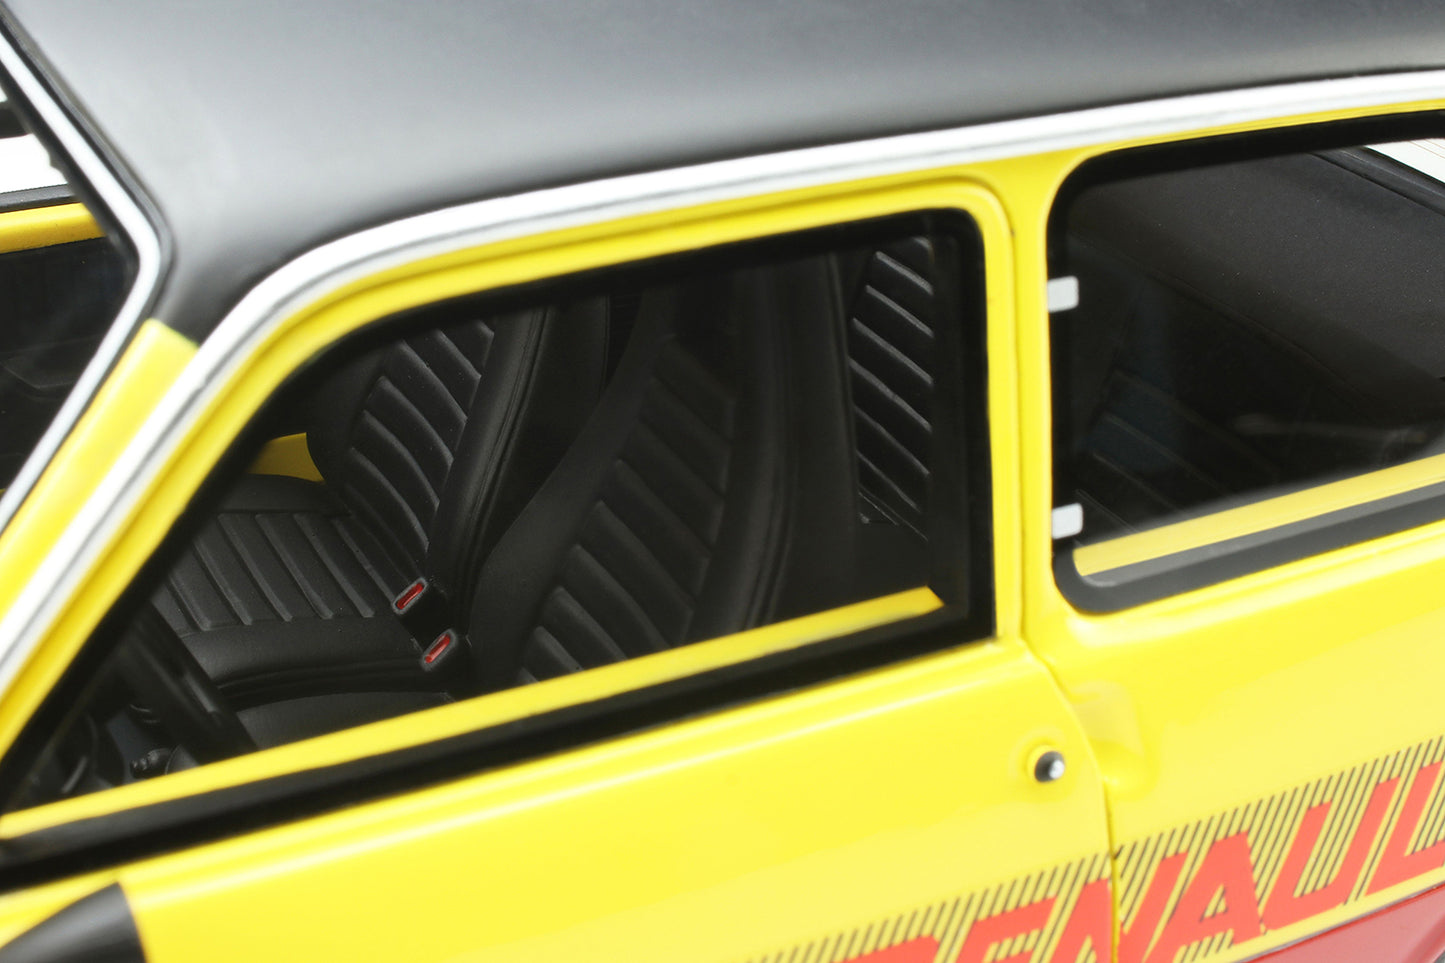 OTTO 1:18 1978 Renault 5 TS Monte Carlo OT891